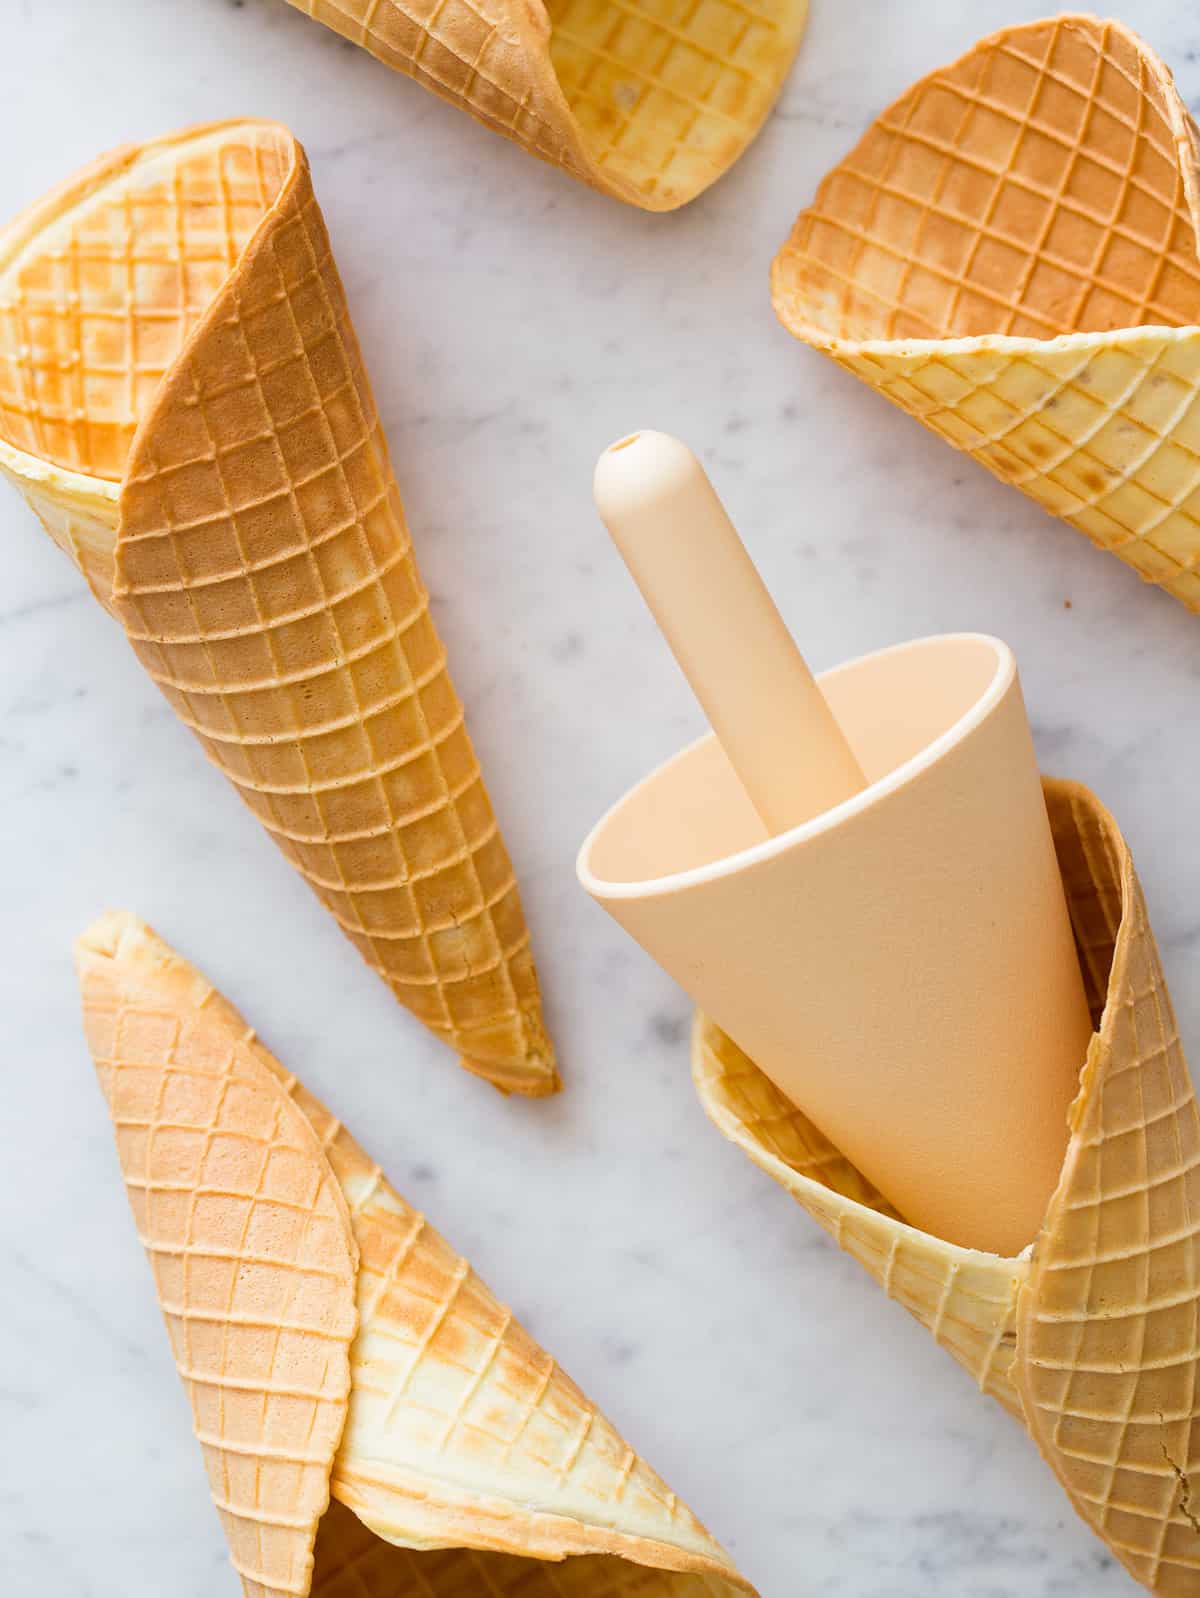 homemade ice cream cones recipe - happy foods tube on ice cream cone recipe uk